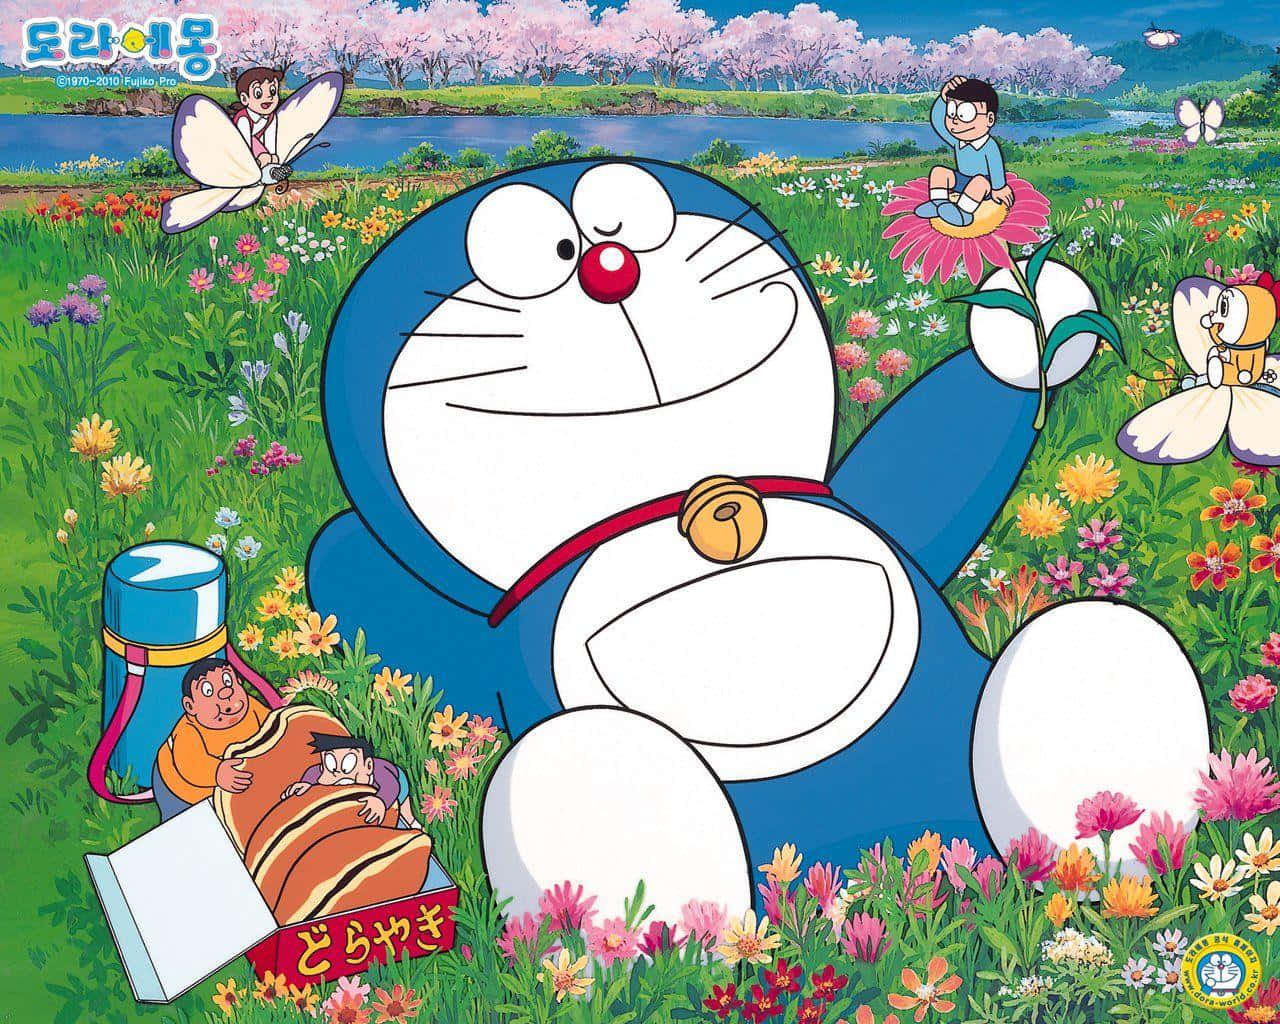 Fundodo Doraemon